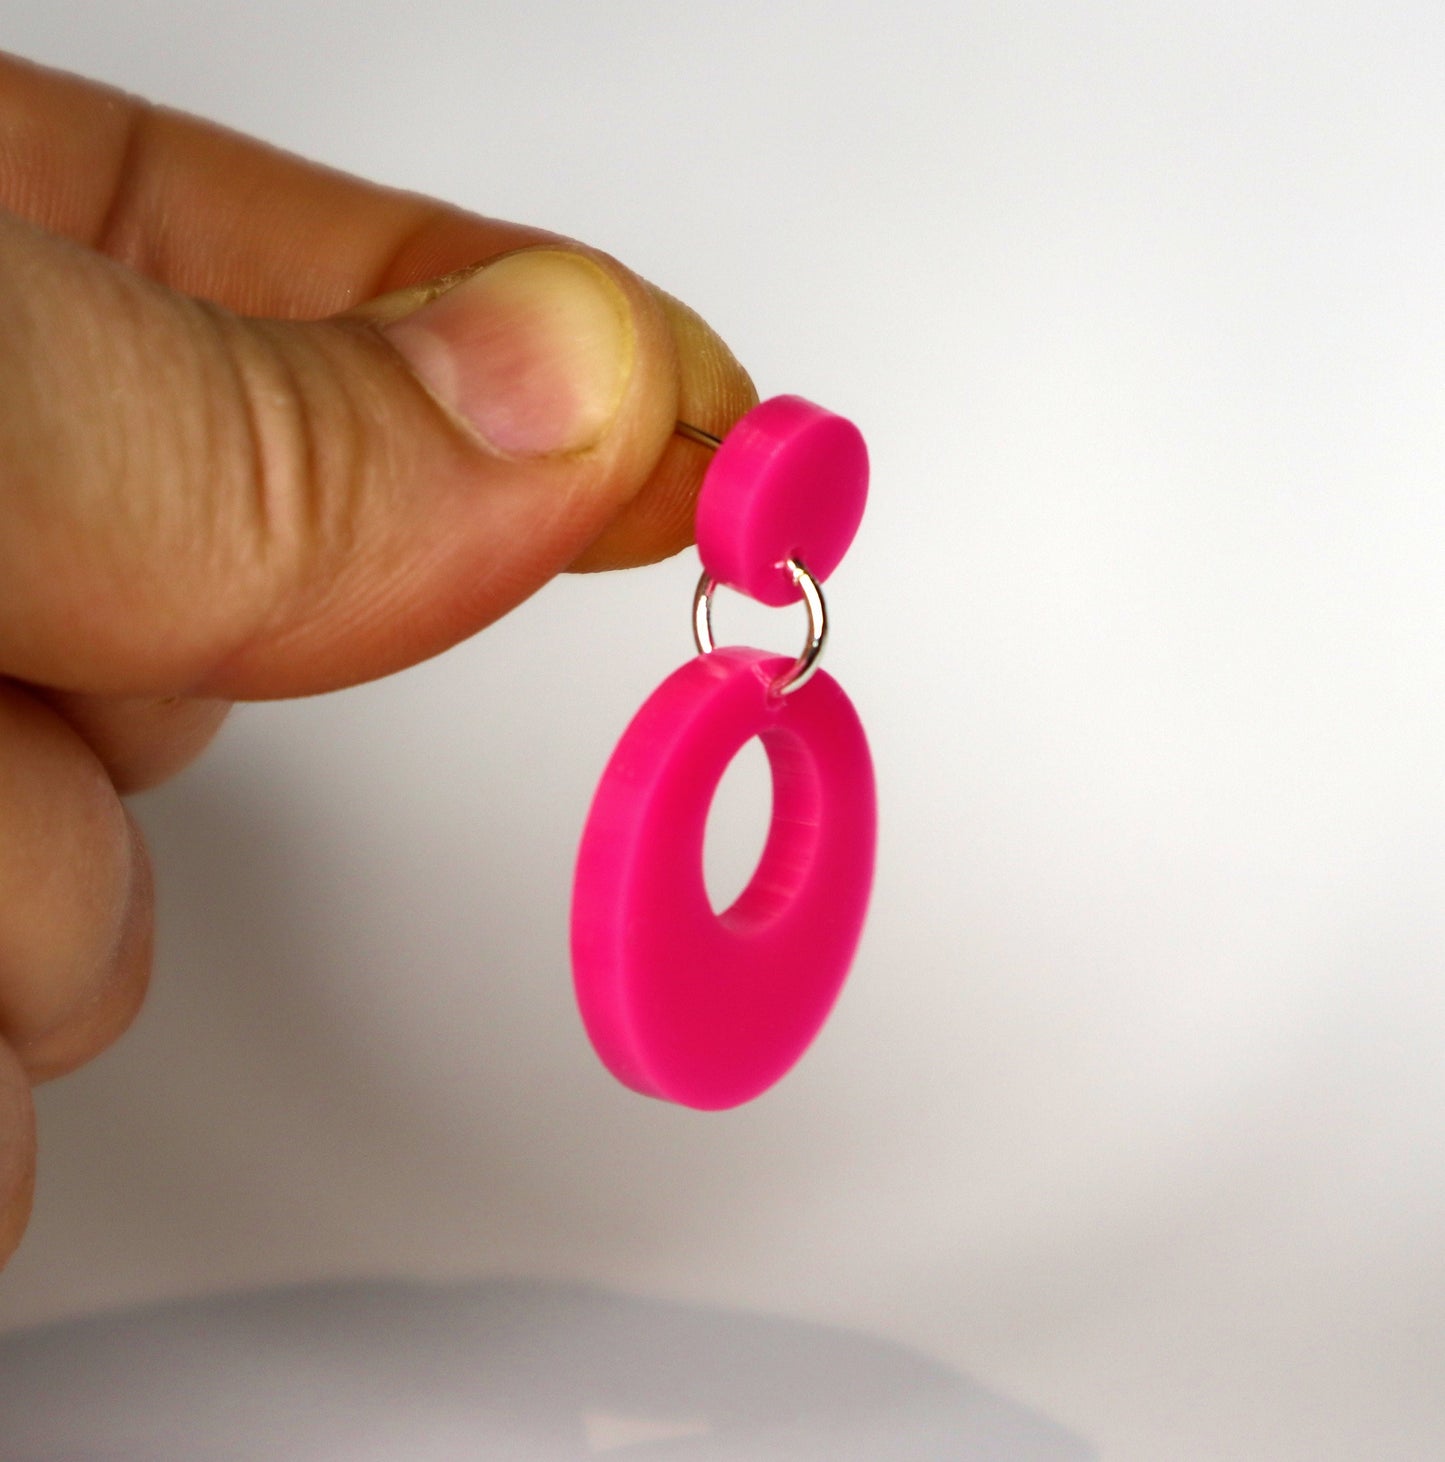 Retro Mod Earrings - laser cut acrylic - pink